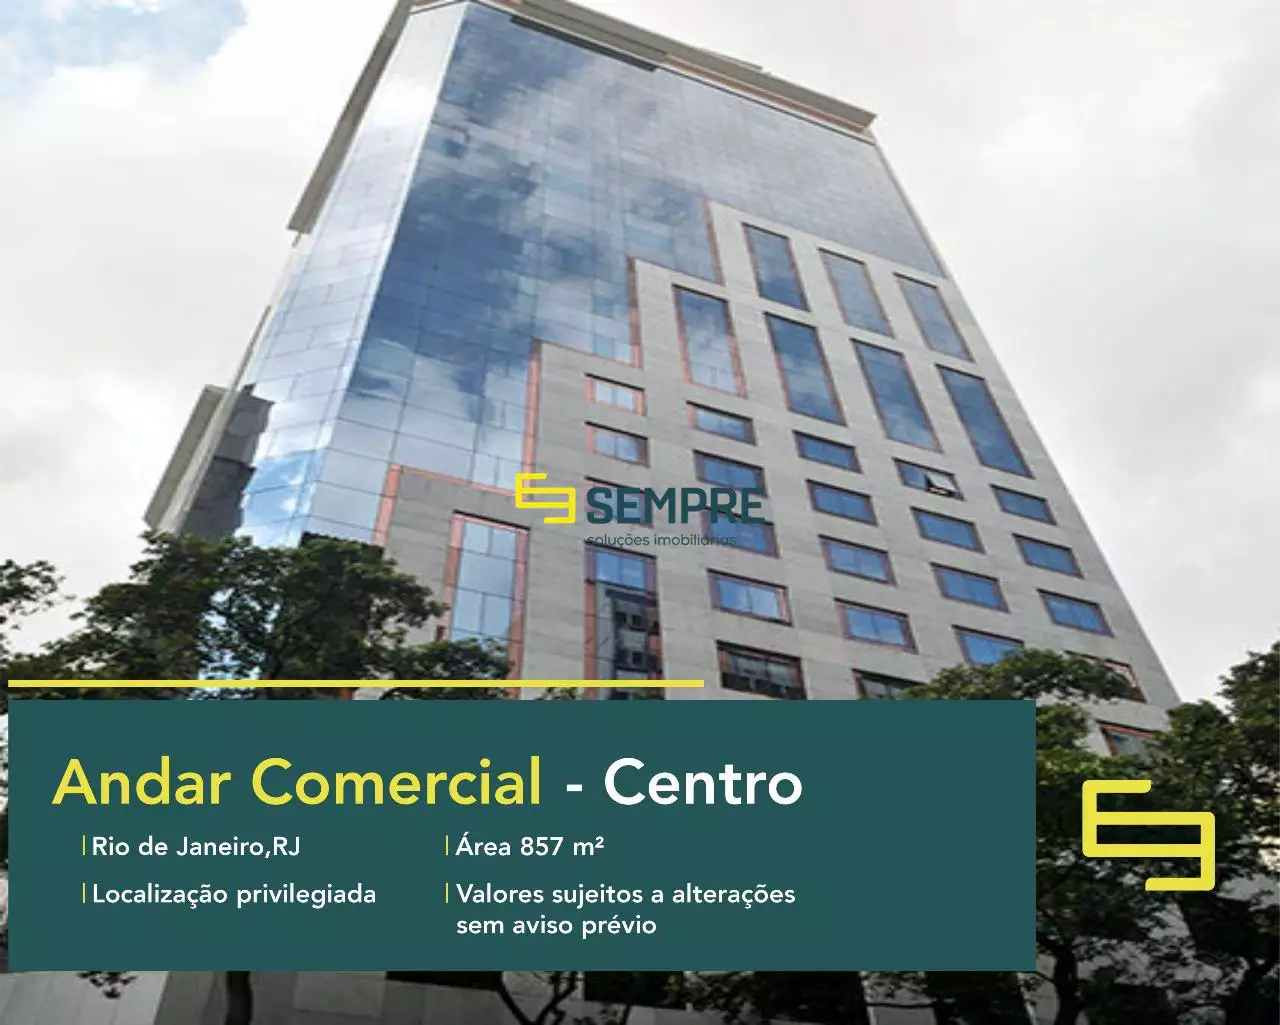 Andar comercial no Candelária Corporate para alugar - RJ, em excelente localização. O ponto comercial conta com área de 857 m².